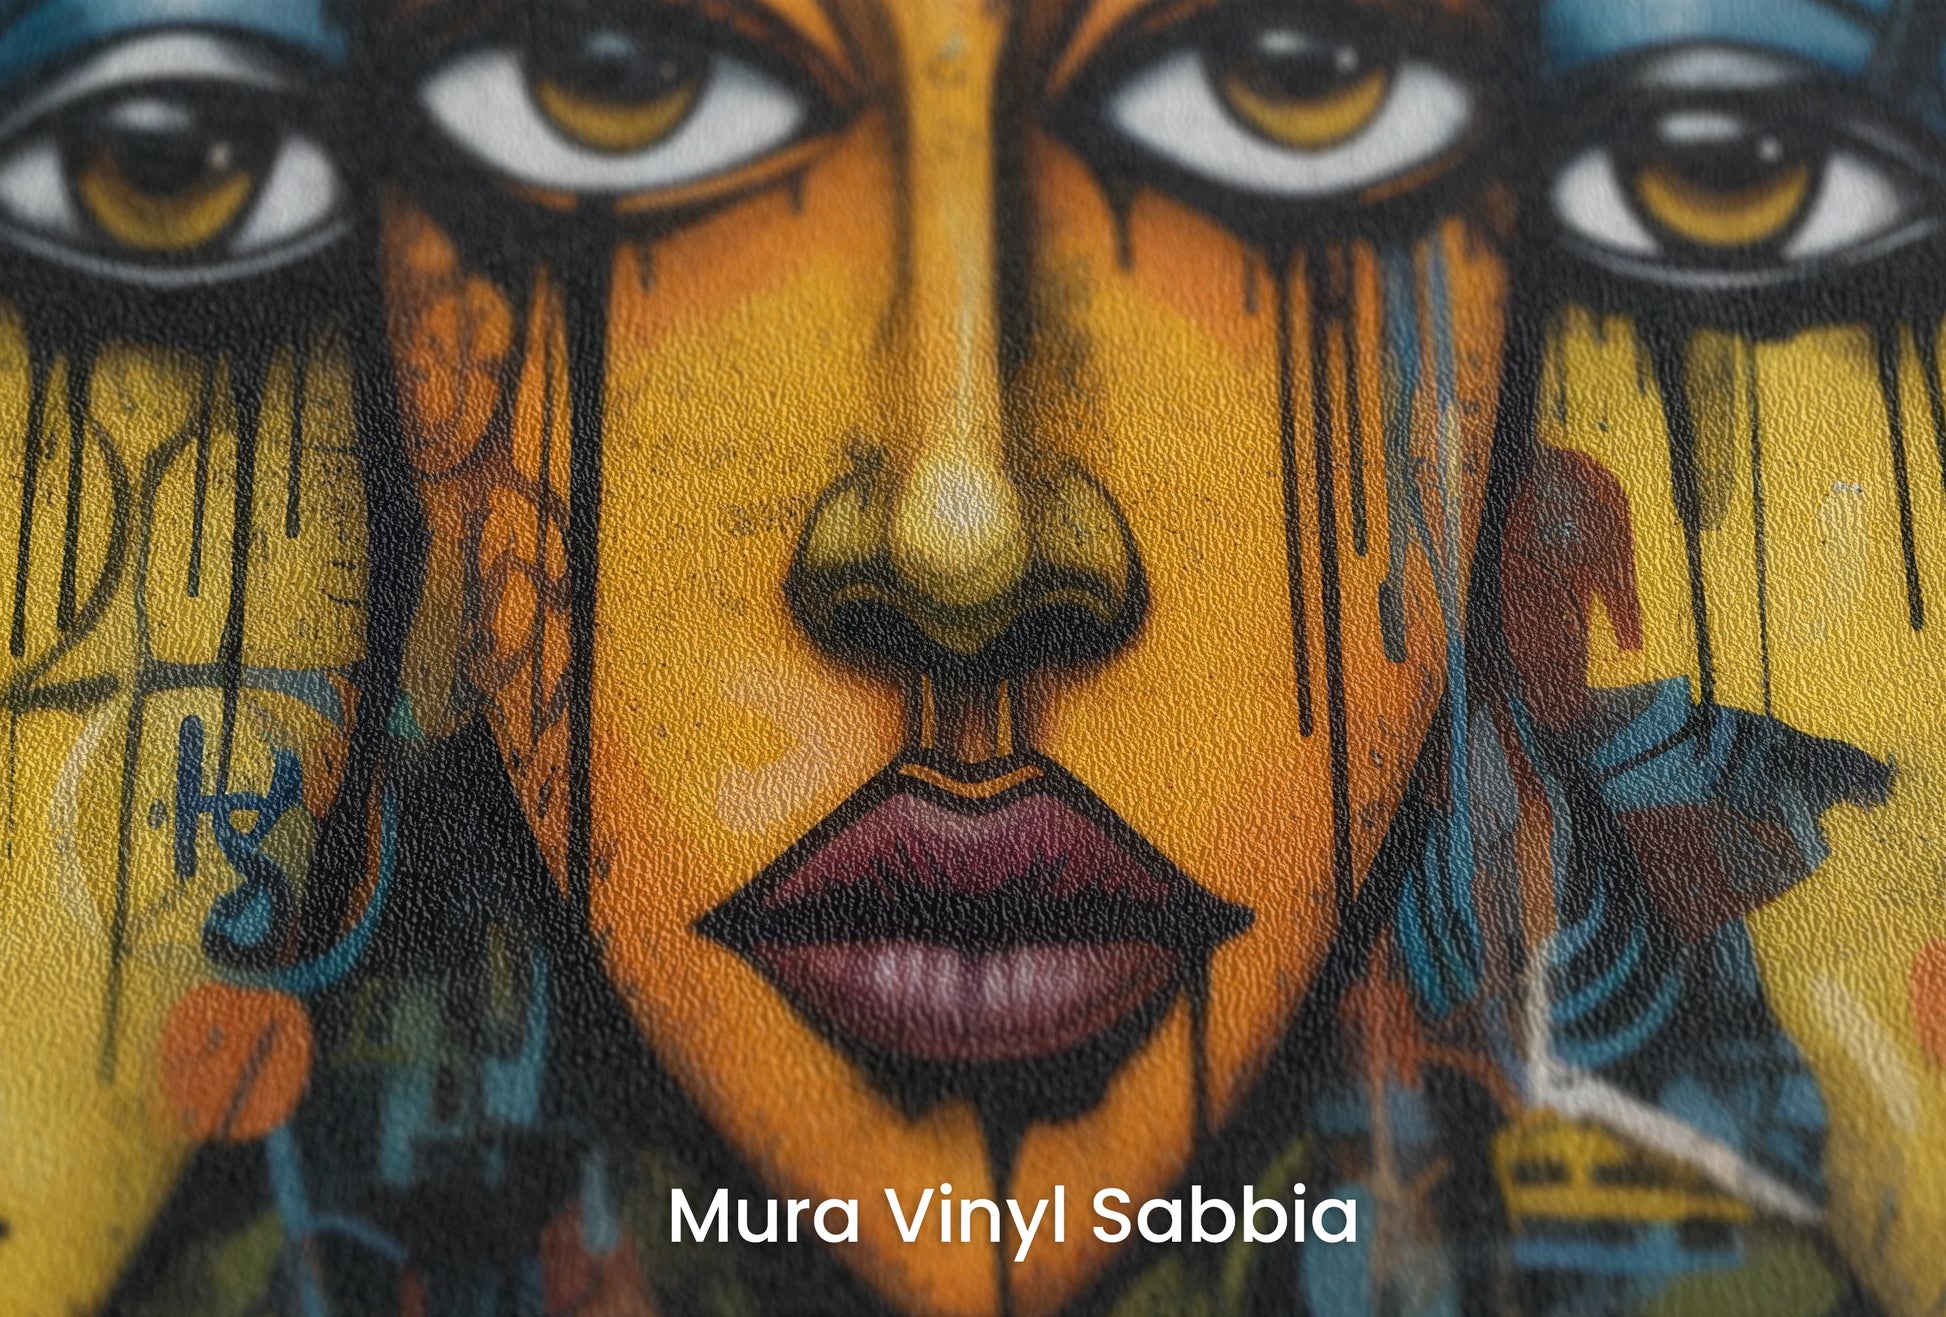 Zbliżenie na artystyczną fototapetę o nazwie Triptych of Minds na podłożu Mura Vinyl Sabbia struktura grubego ziarna piasku.